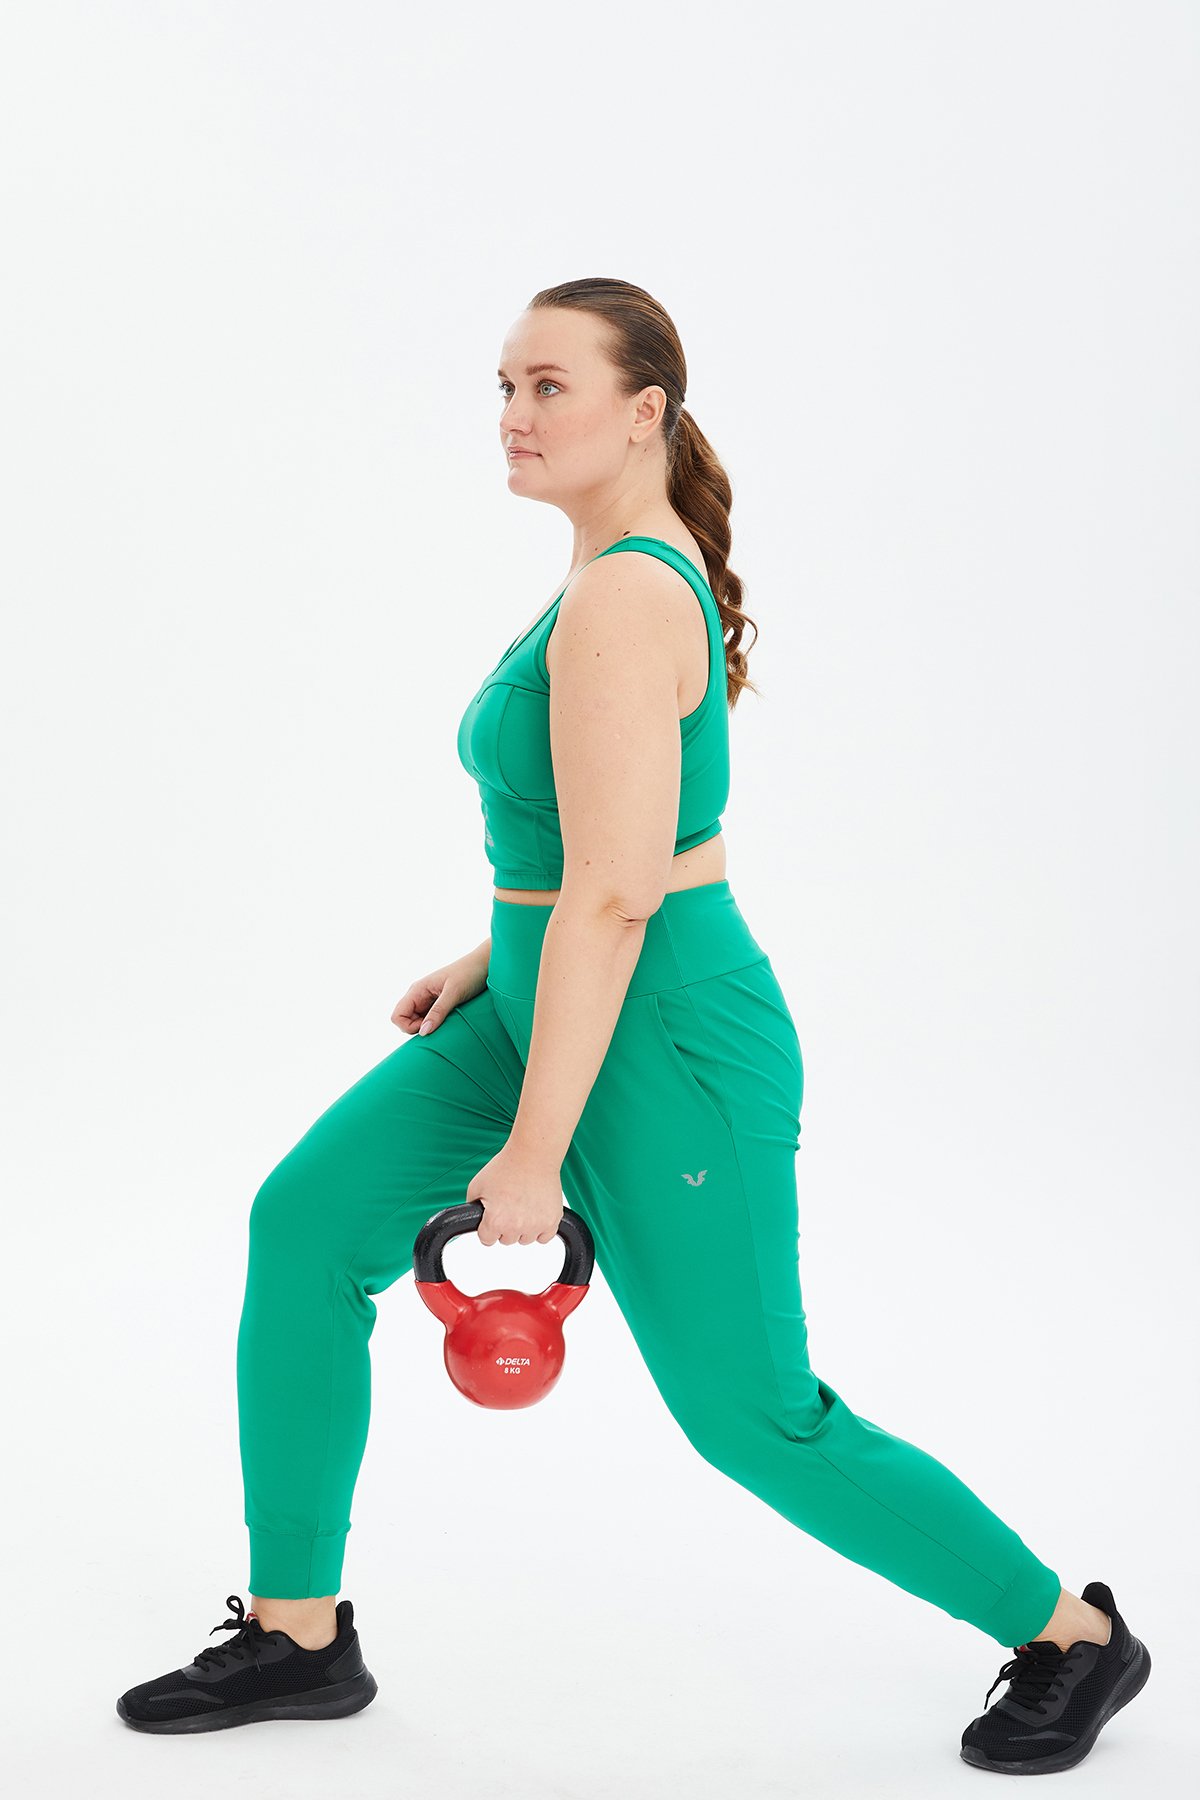 Kadın Yeşil Fitness-Antrenman Spor Fashion Crop Top Toparlayıcı Bra Sporcu Sütyeni Büstiyer 0604 - 16